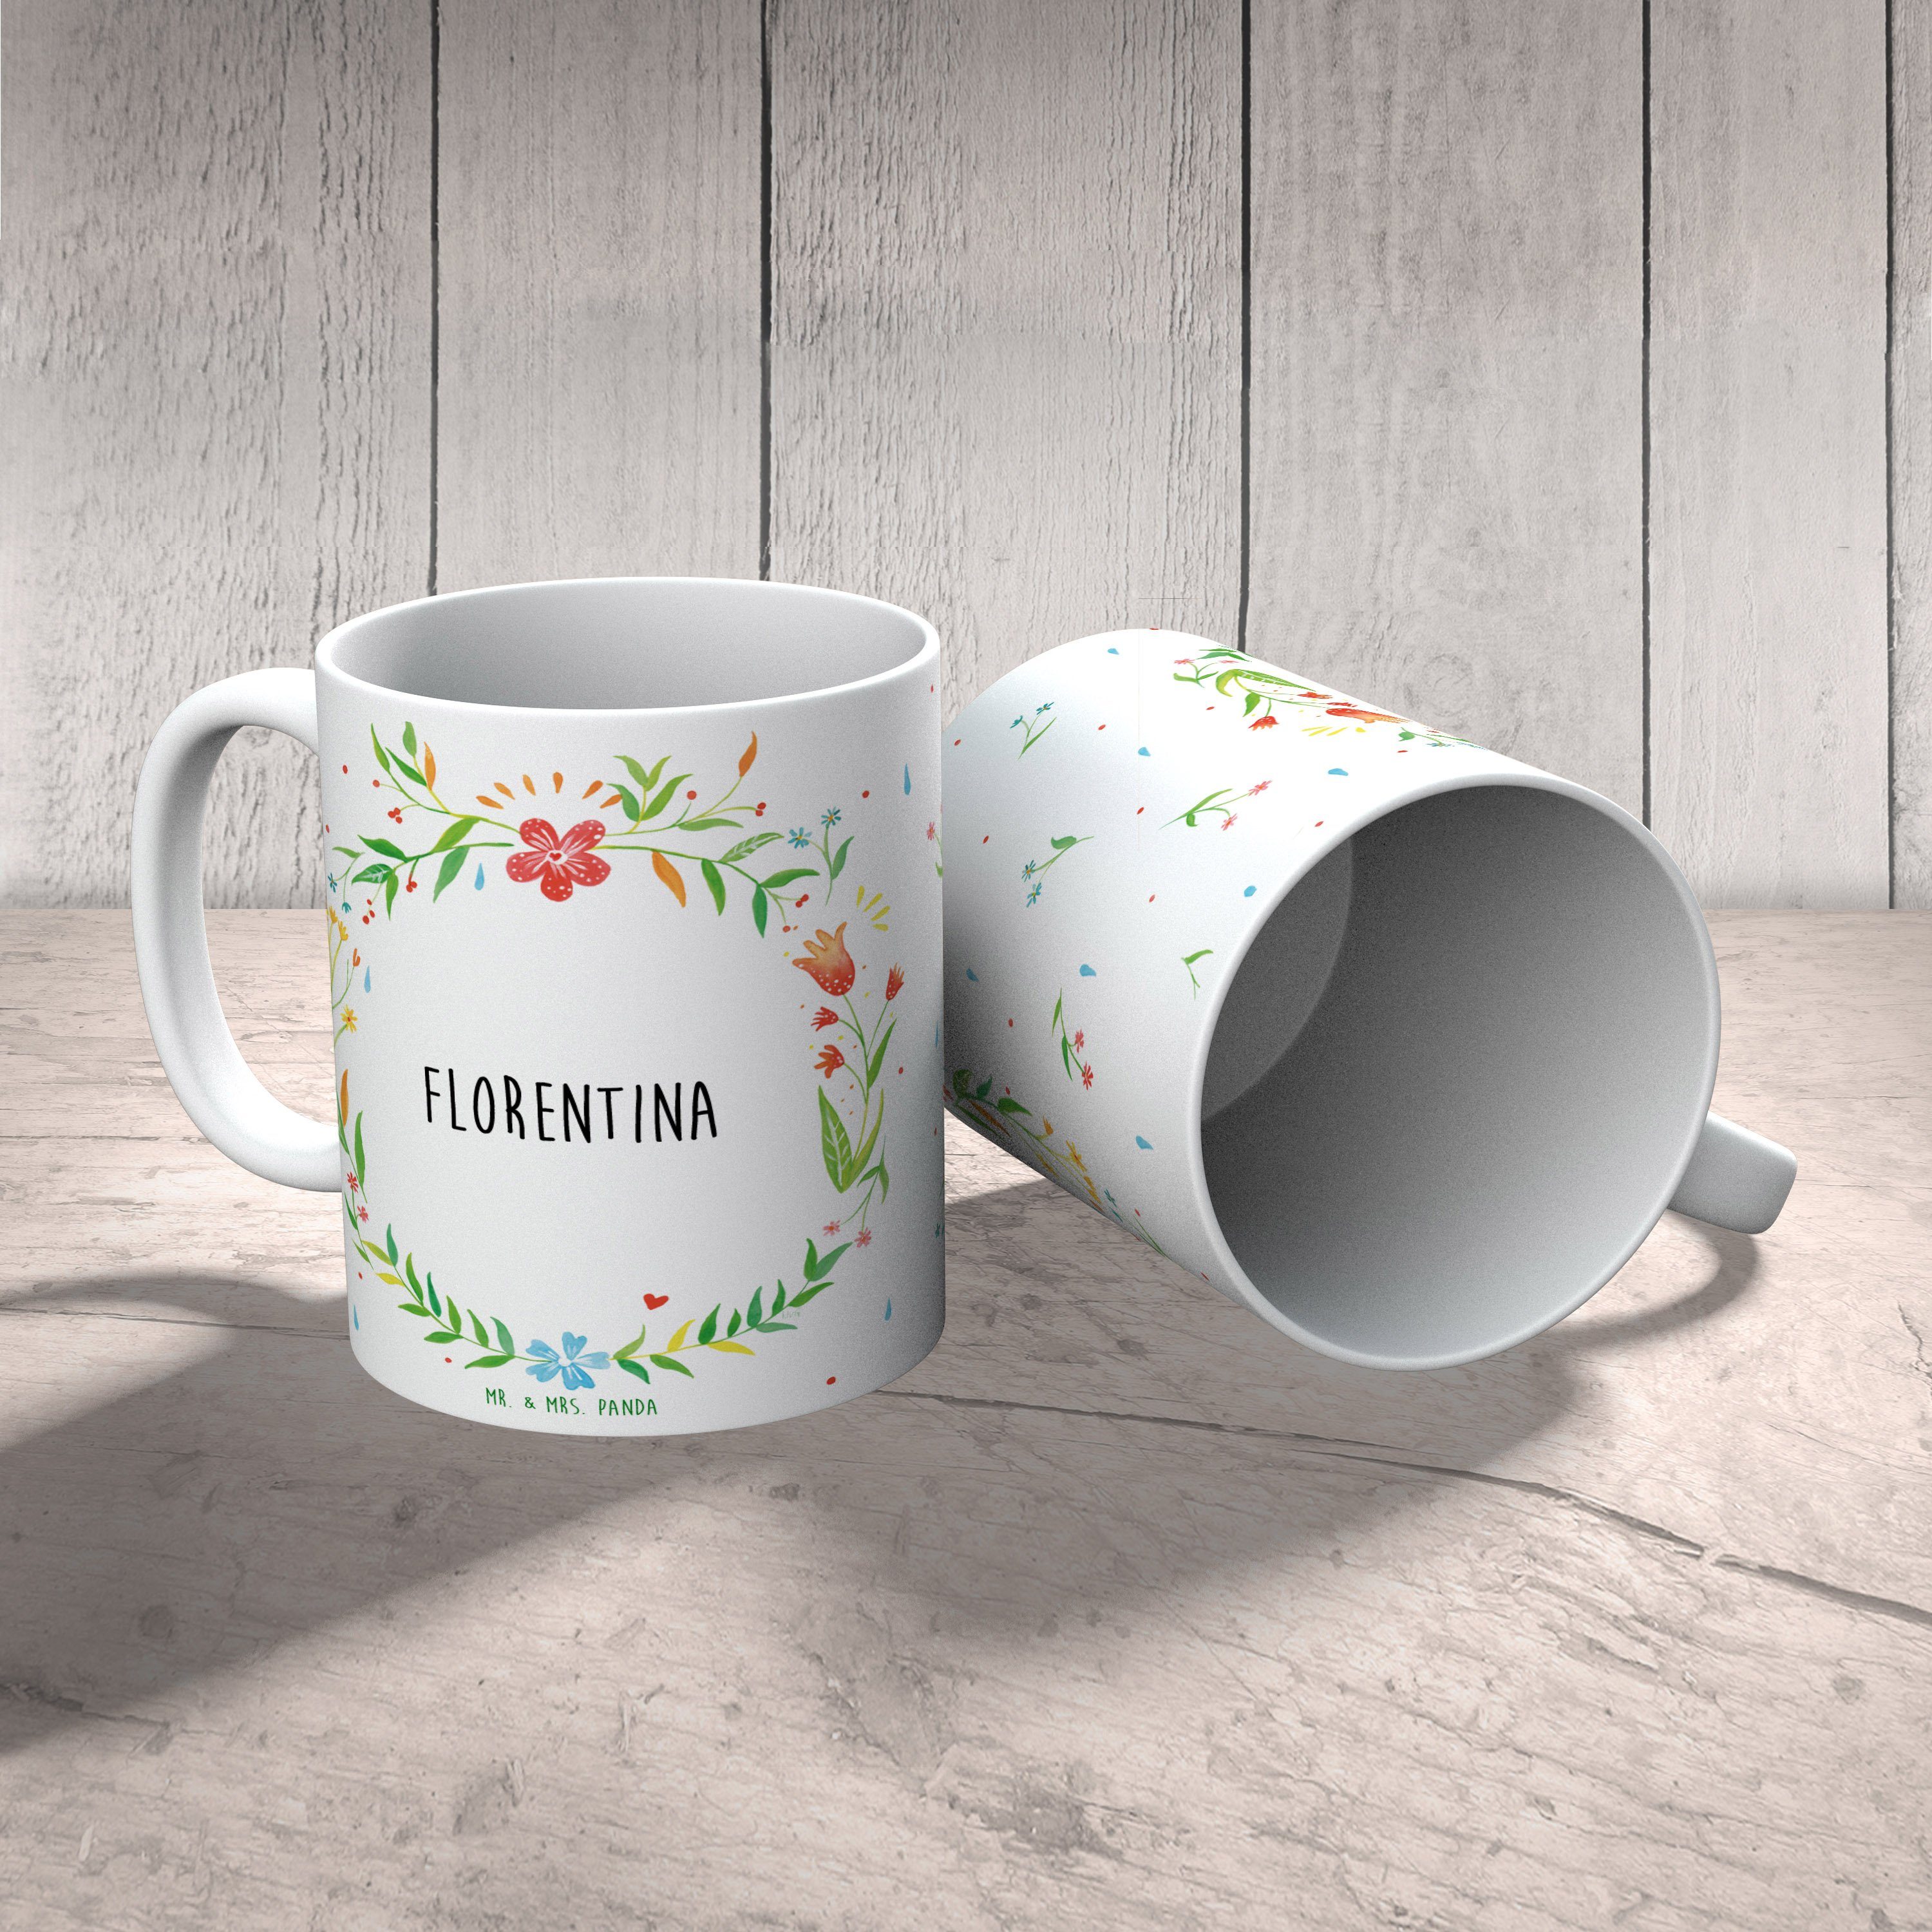 Geschenk, Kaffeebecher, Panda Sprüche, - Geschenk Tasse Tasse Keramik Mr. P, Mrs. & Tasse, Florentina